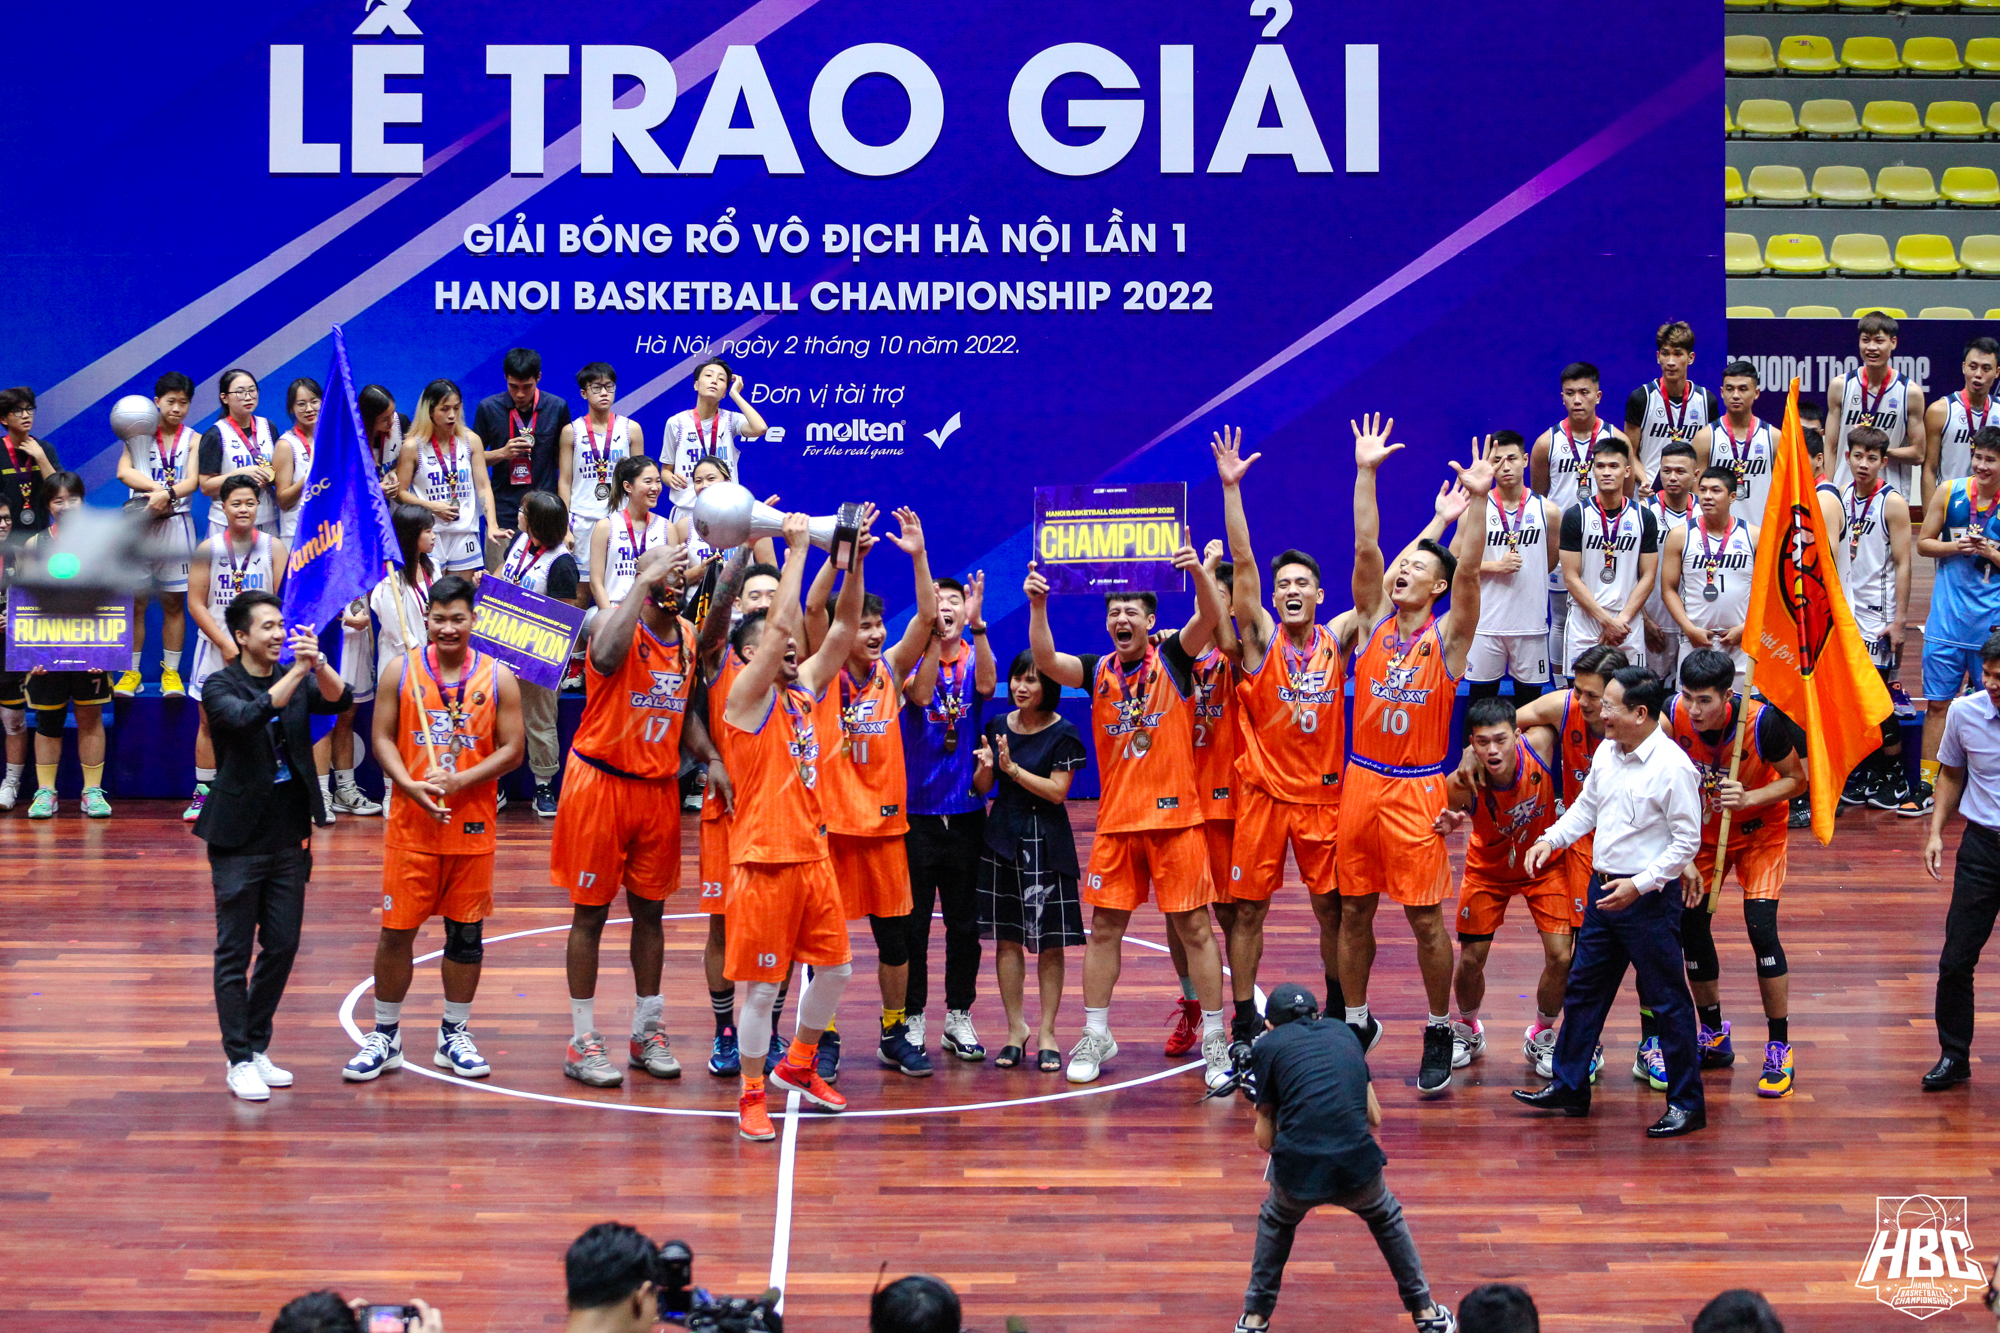 Người hâm mộ bóng rổ Hà Nội bất ngờ trước sự xuất hiện của Chi Pu tại giải đấu HBC 2022 - Ảnh 4.